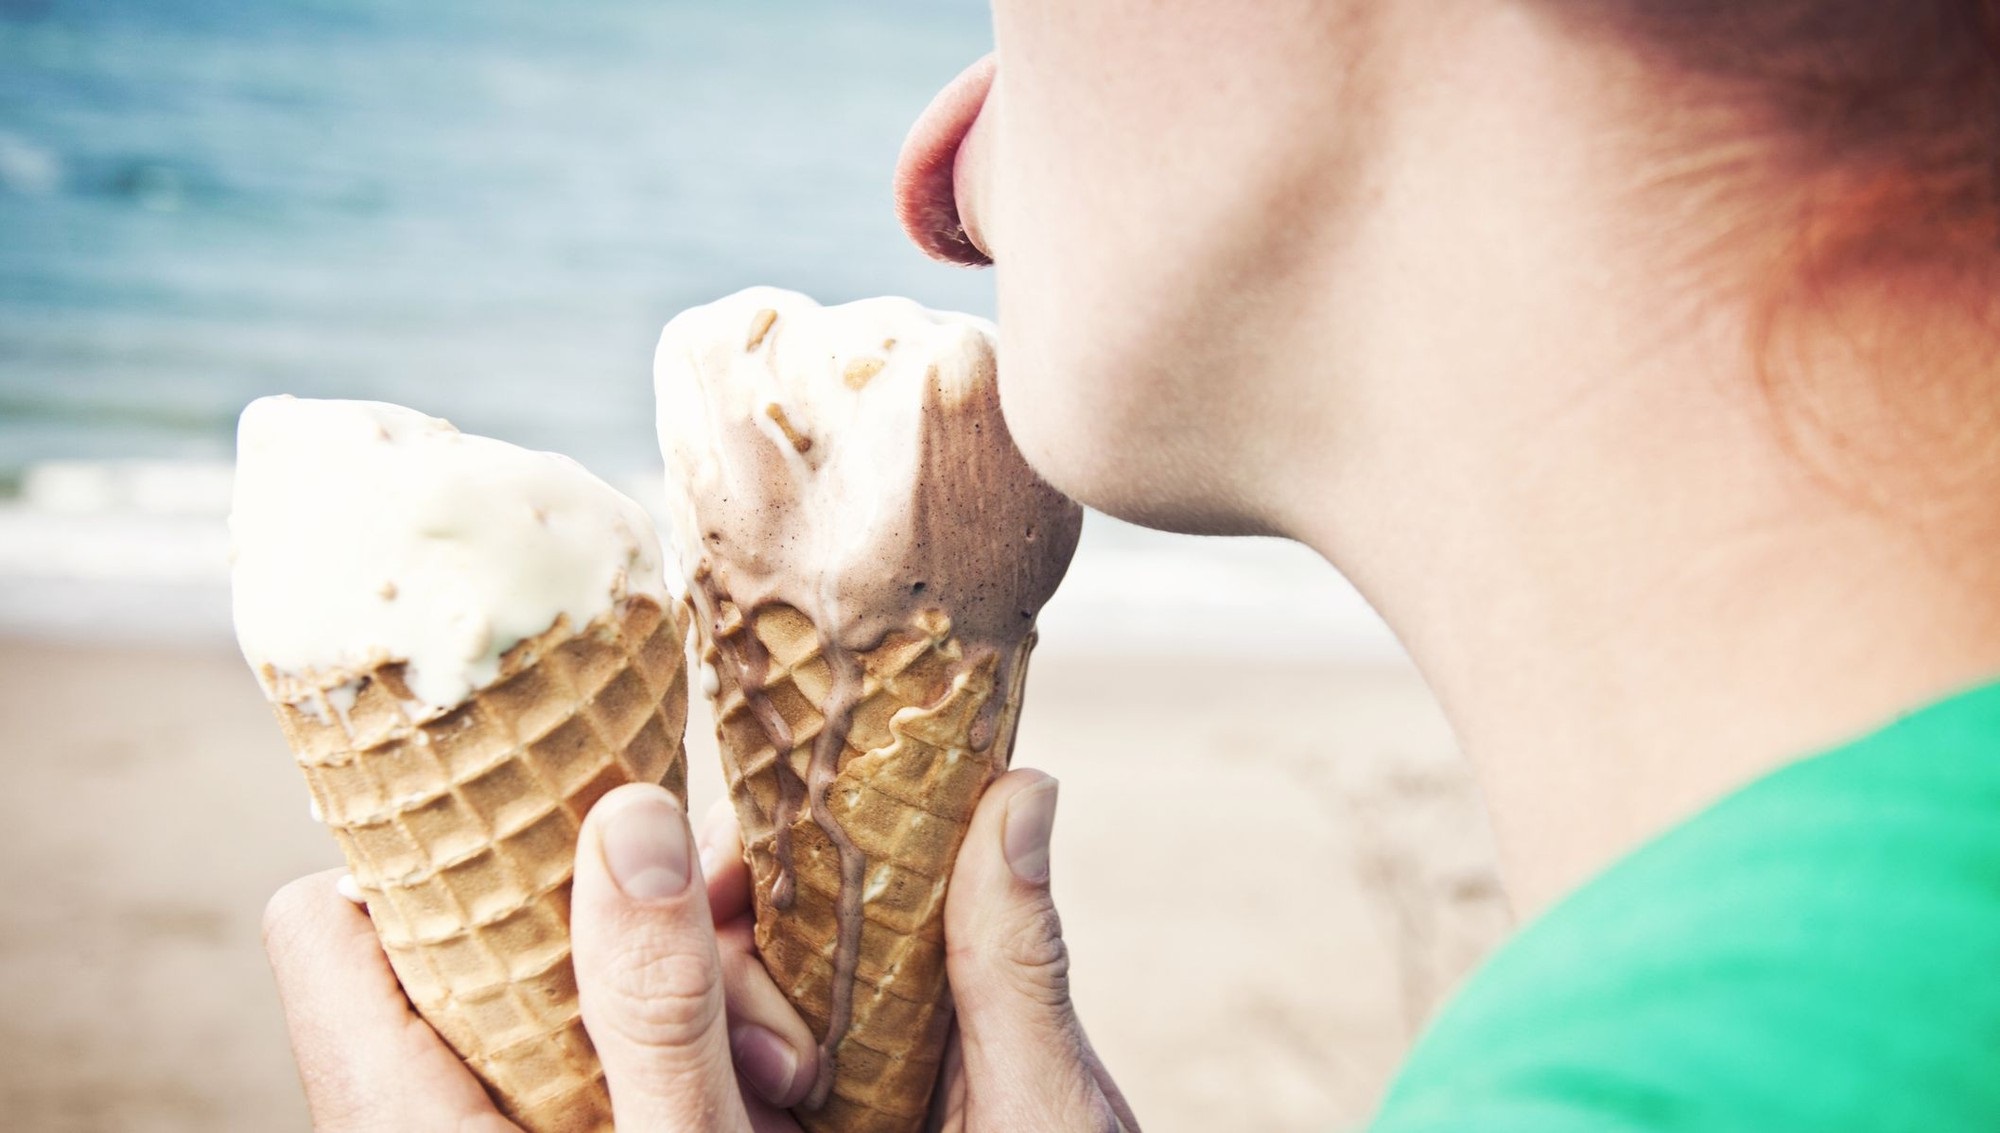 Cô gái 26 tuổi đi cấp cứu sau khi ăn kem, lời cảnh báo cho tất cả mọi người khi ăn đồ lạnh trong mùa hè - Ảnh 2